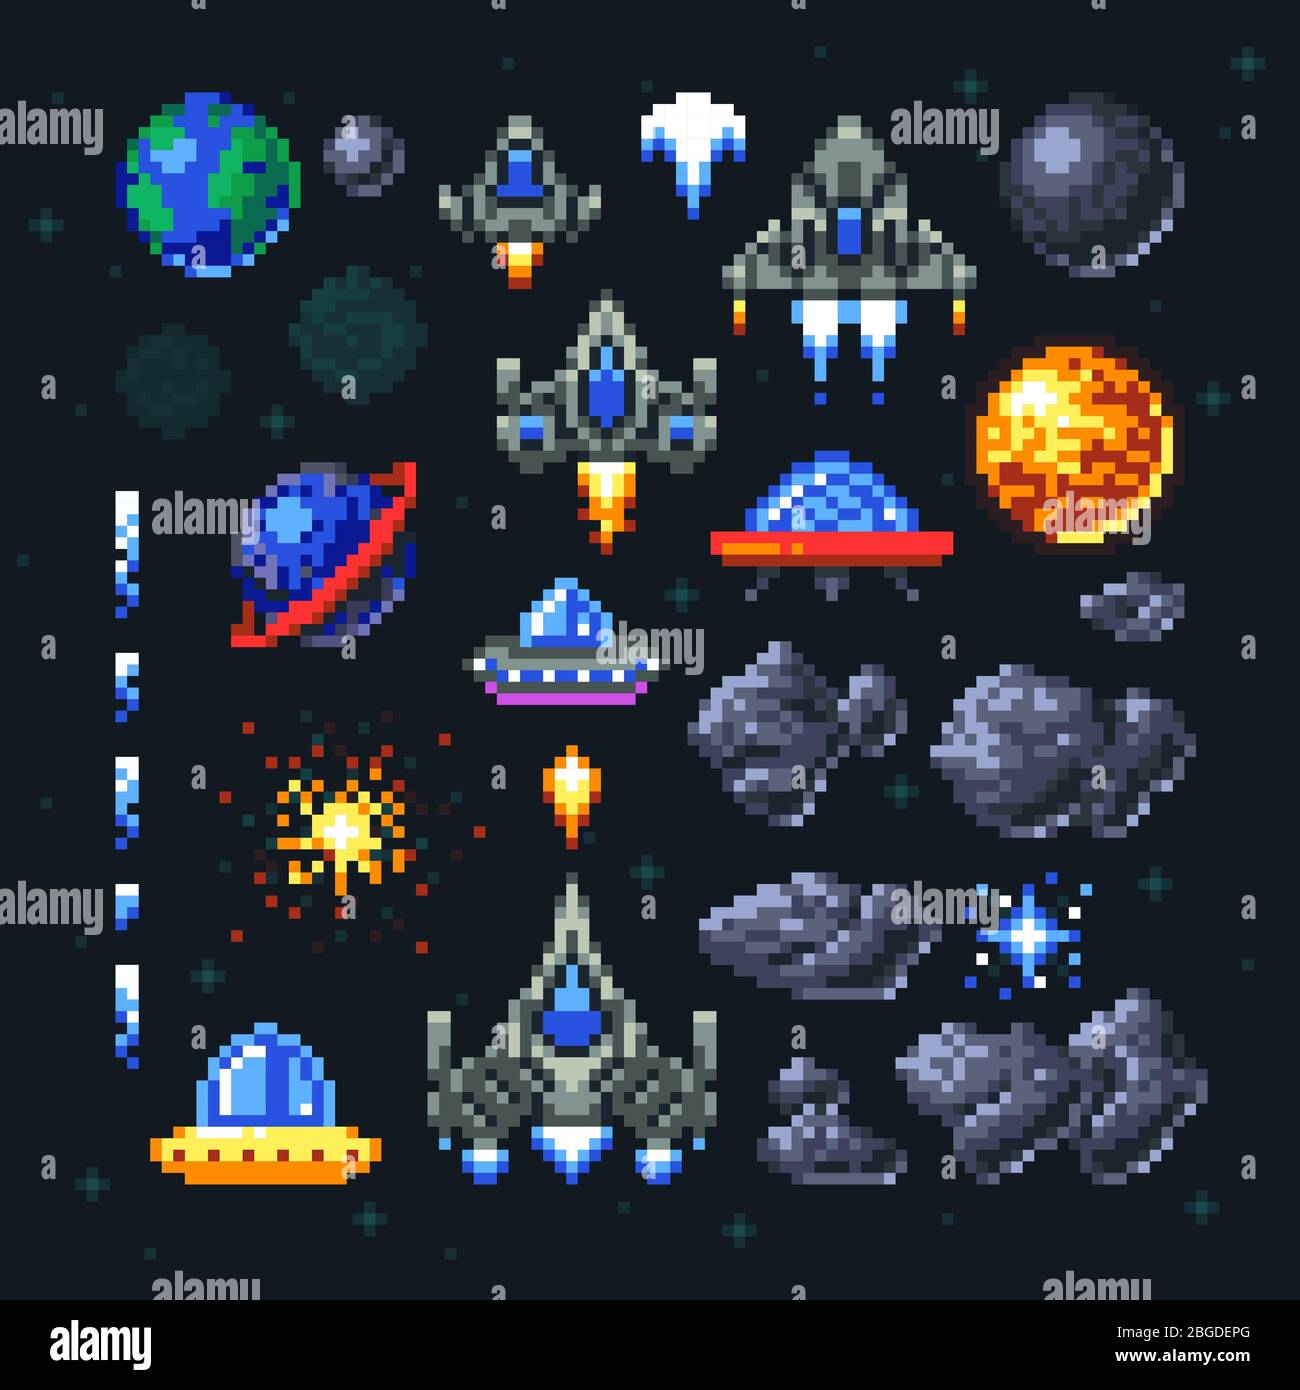 Elementos De Pixeles Del Juego Arcade Retro Invasores Naves Espaciales Planetas Y Conjunto De Vectores Ovni Juego De Arcade De Video En Pixel Art Ilustracion De Nave Espacial Y Cohete Invasor Imagen